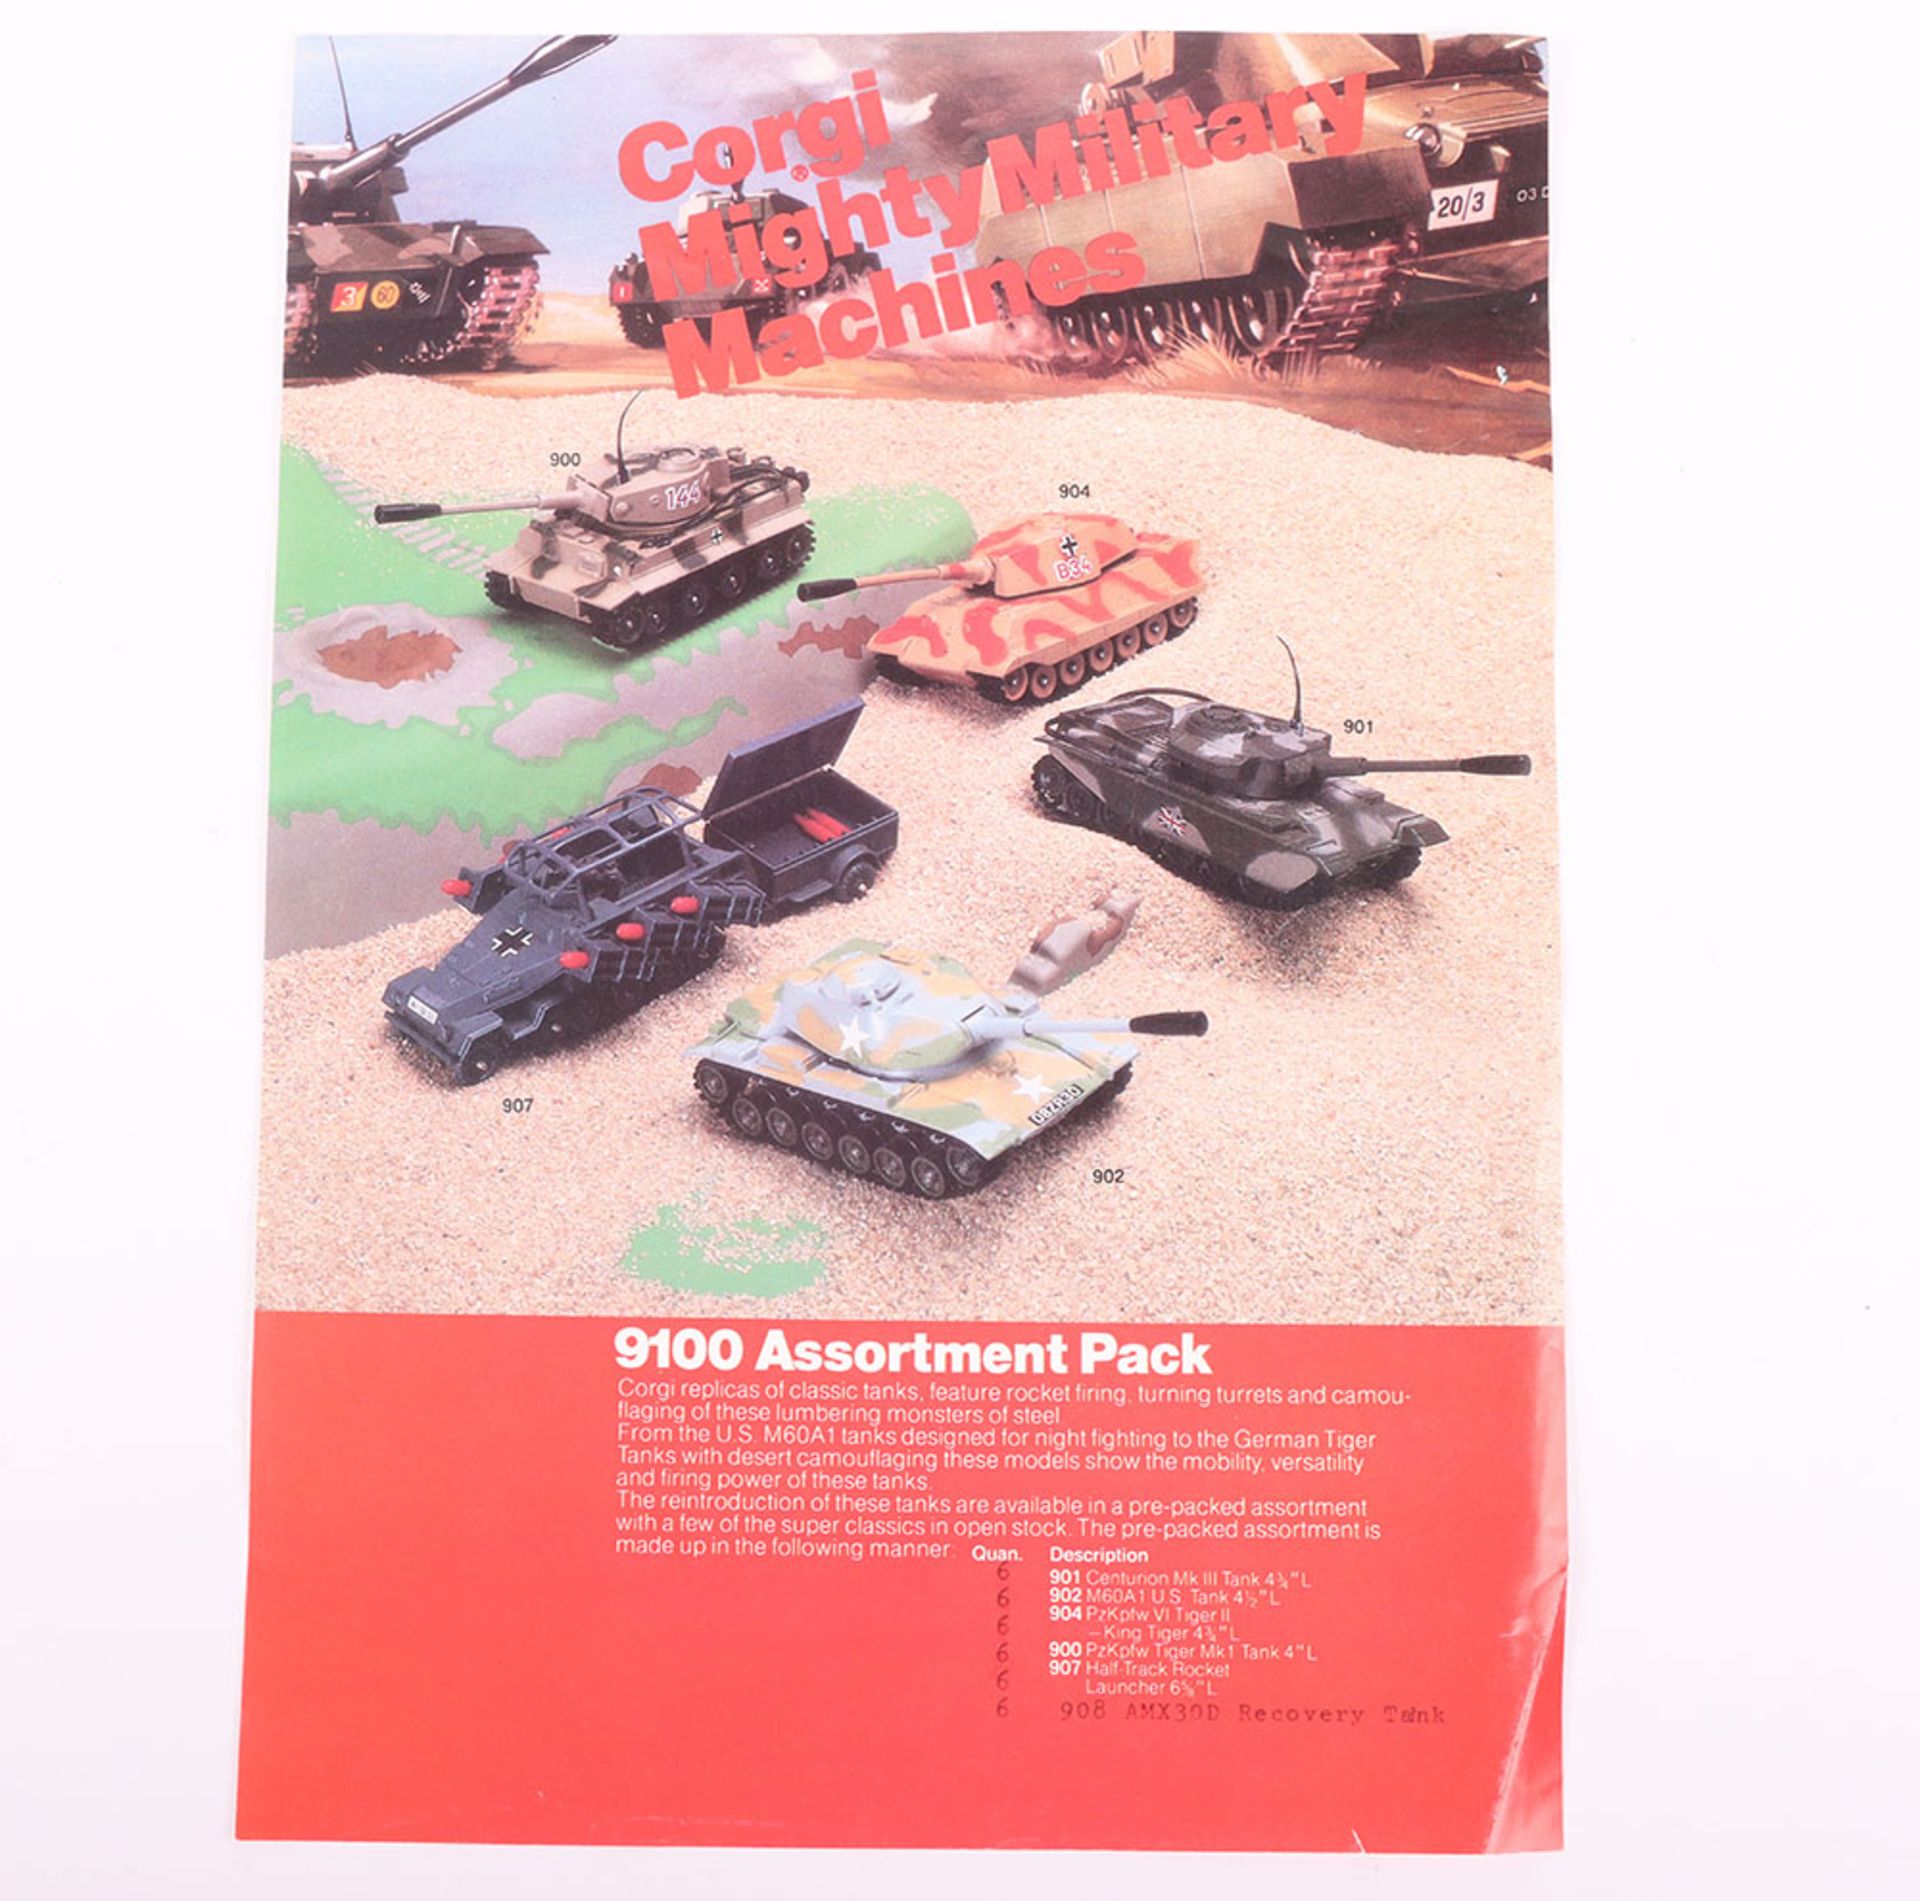 Scarce Corgi C2003 Military Shop Display Stand - Image 10 of 13